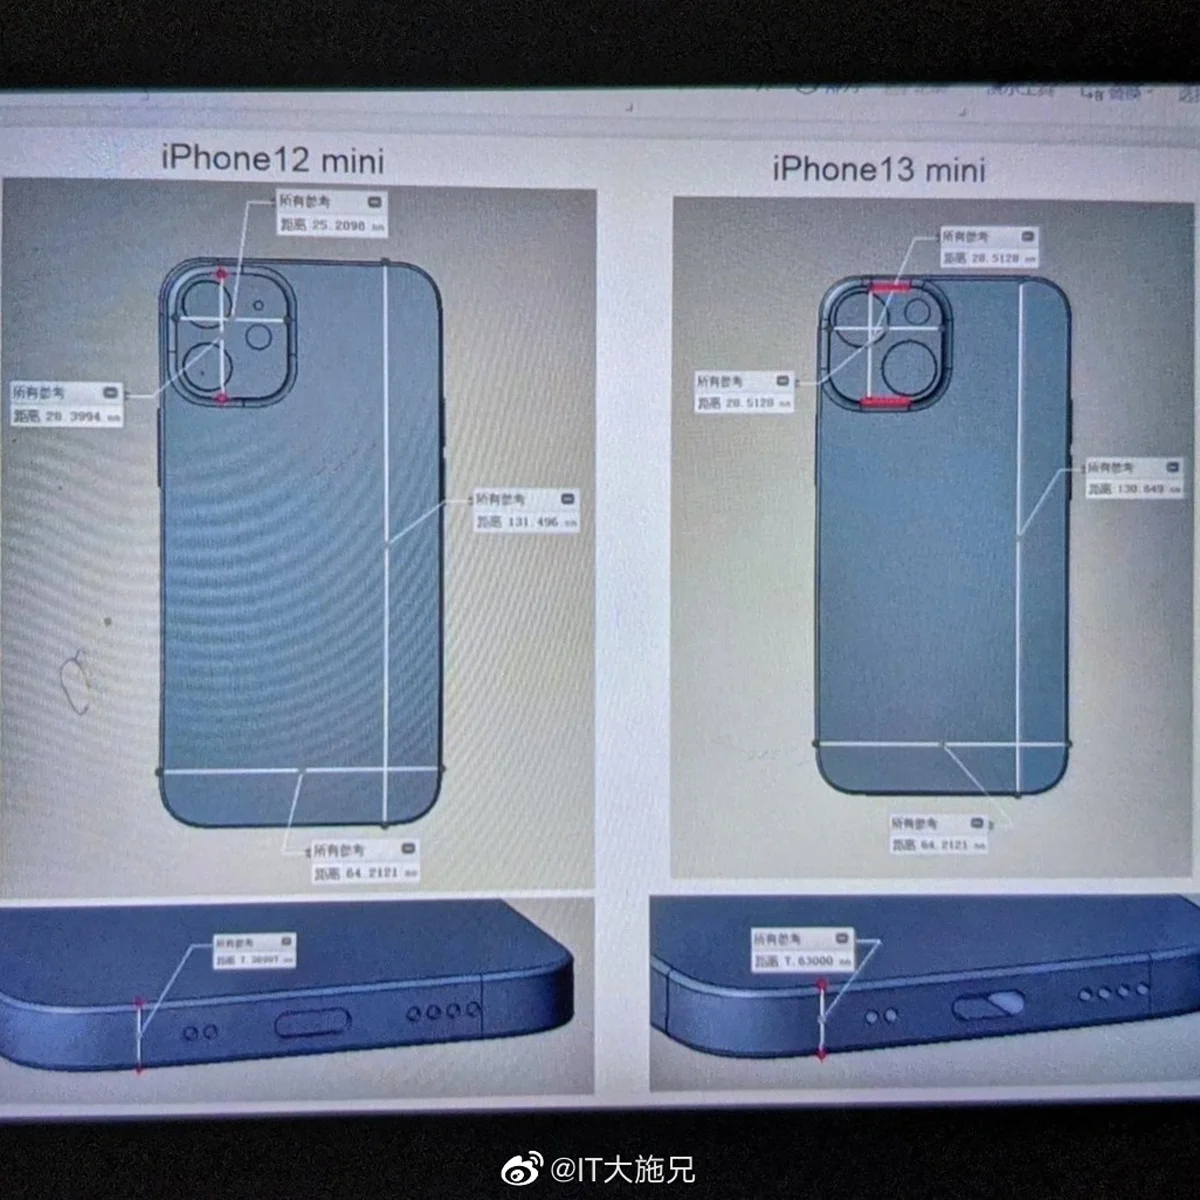 iPhone 13 mini design leaks